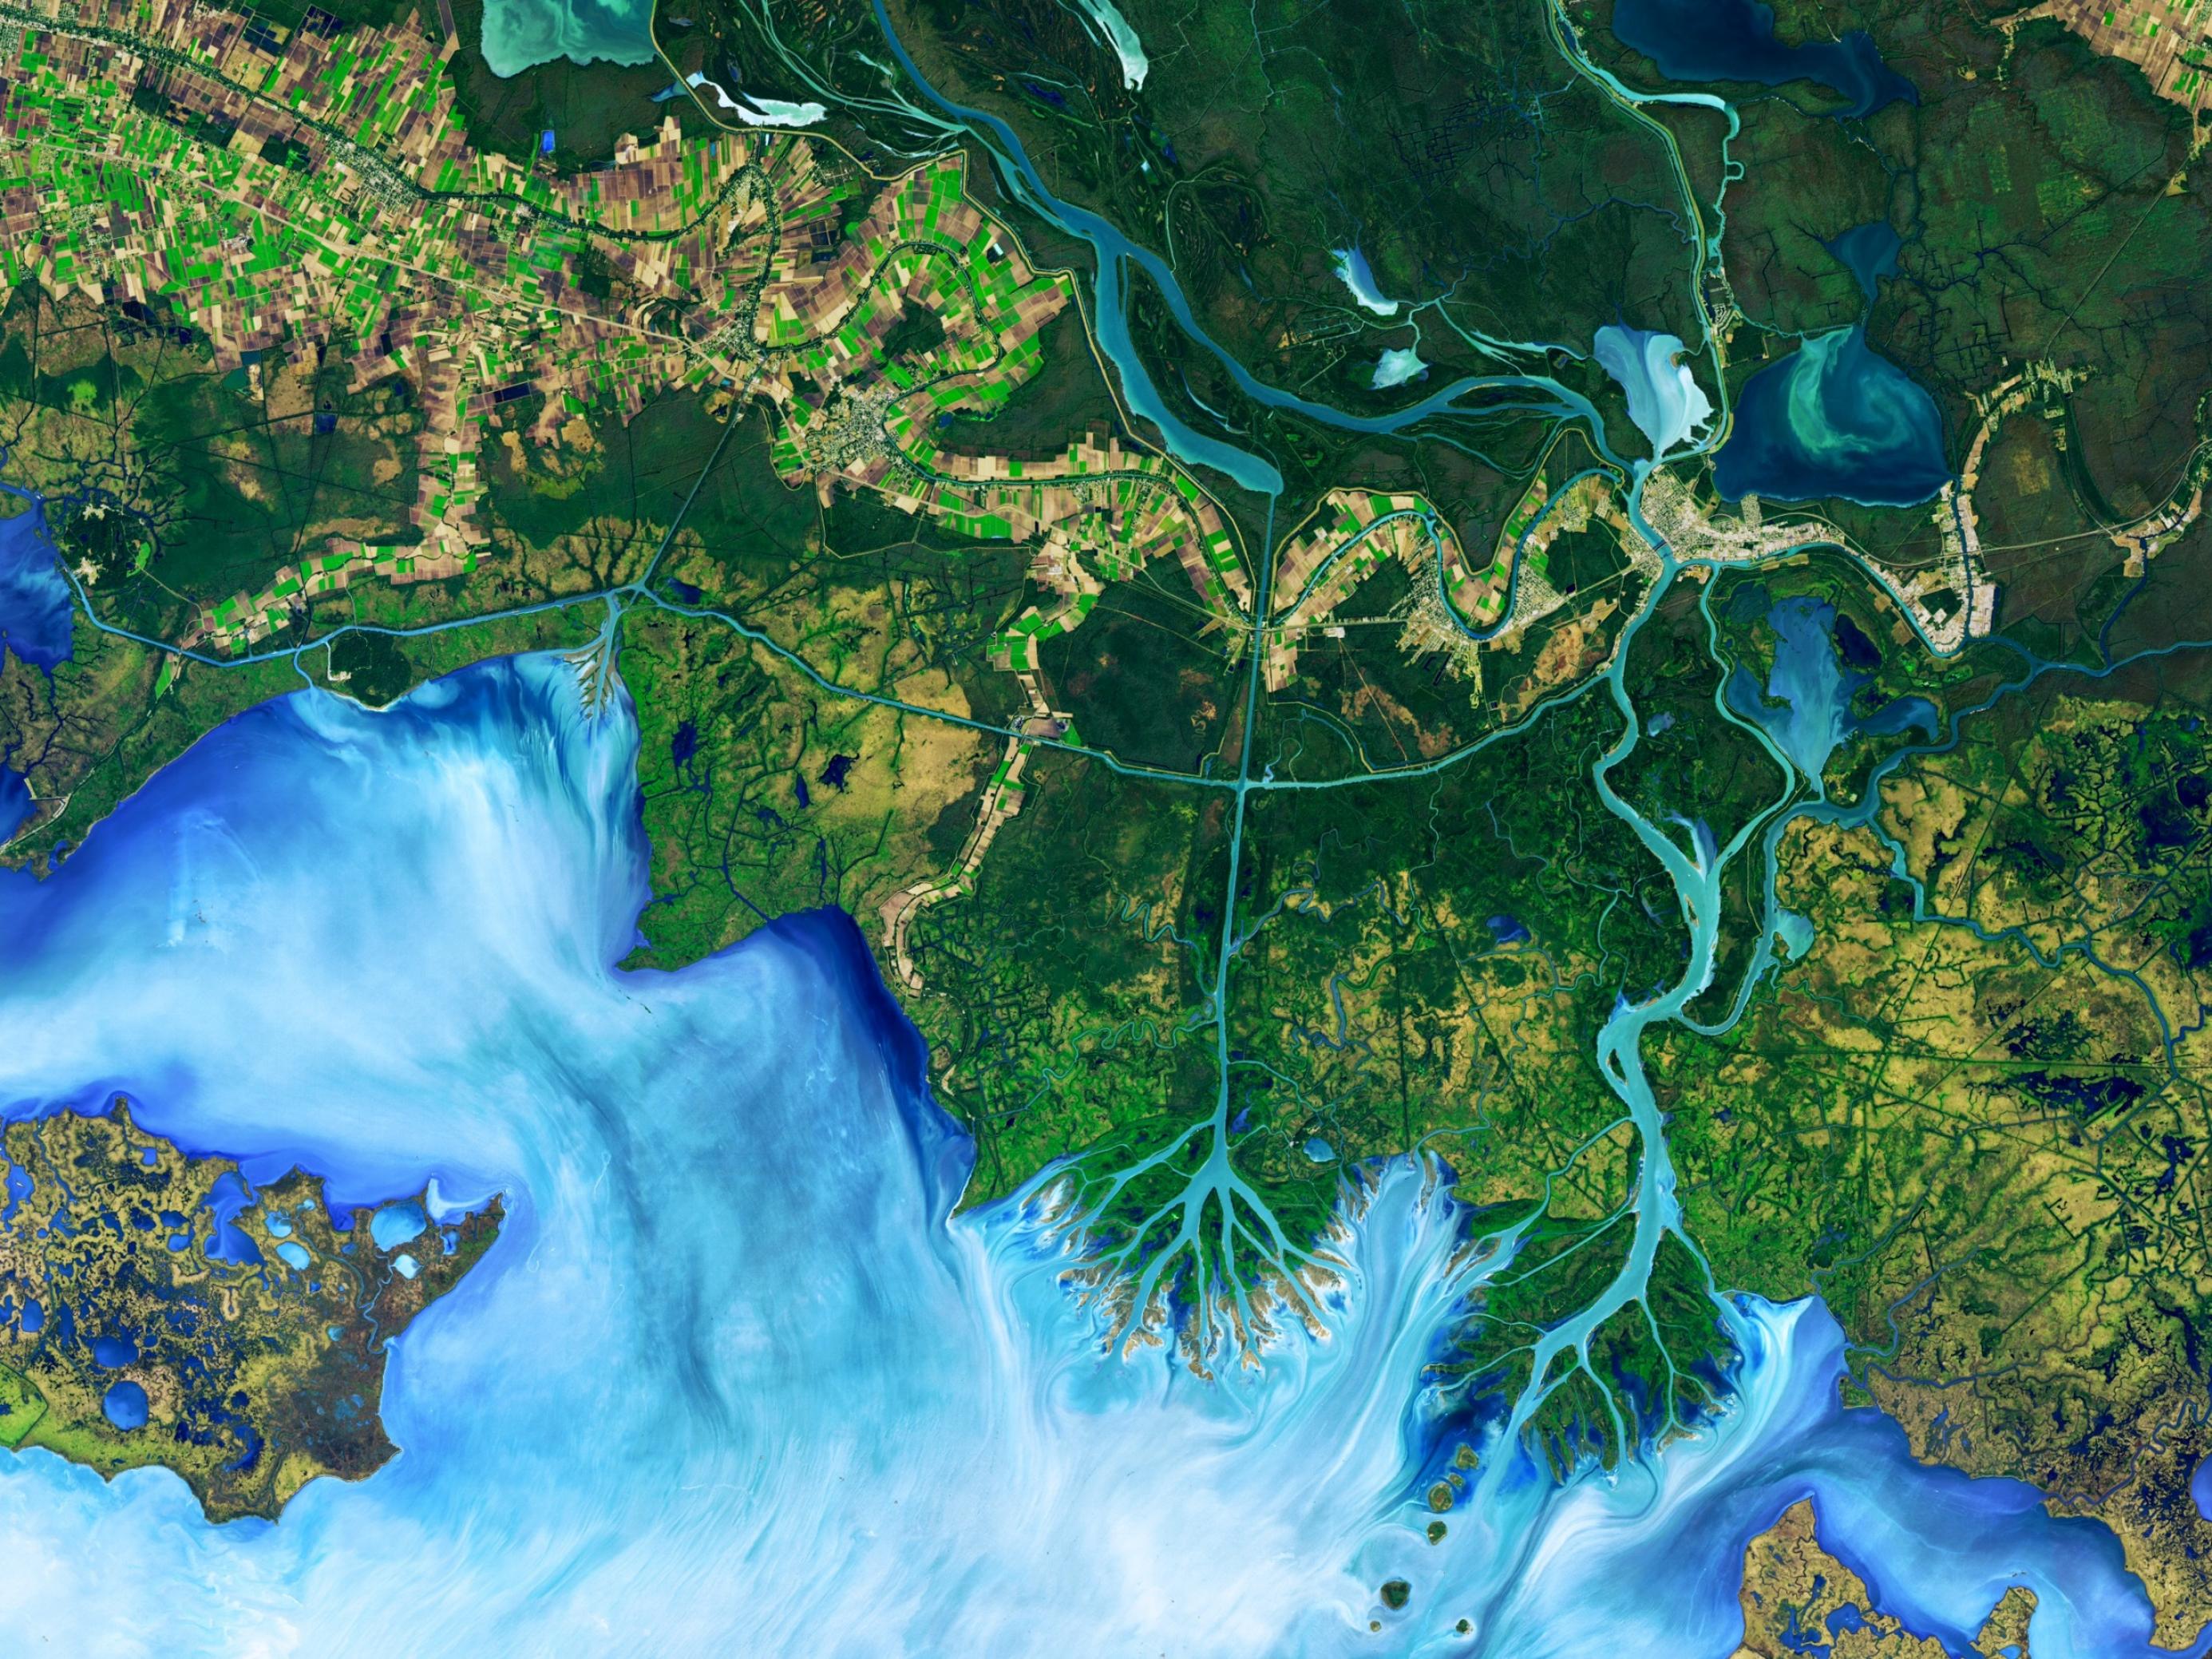 Luftaufnahme des Mississippi mit seinen zahlreichen Verzweigungen und sichtbaren menschlichen Eingriffen, wie Kanälen.